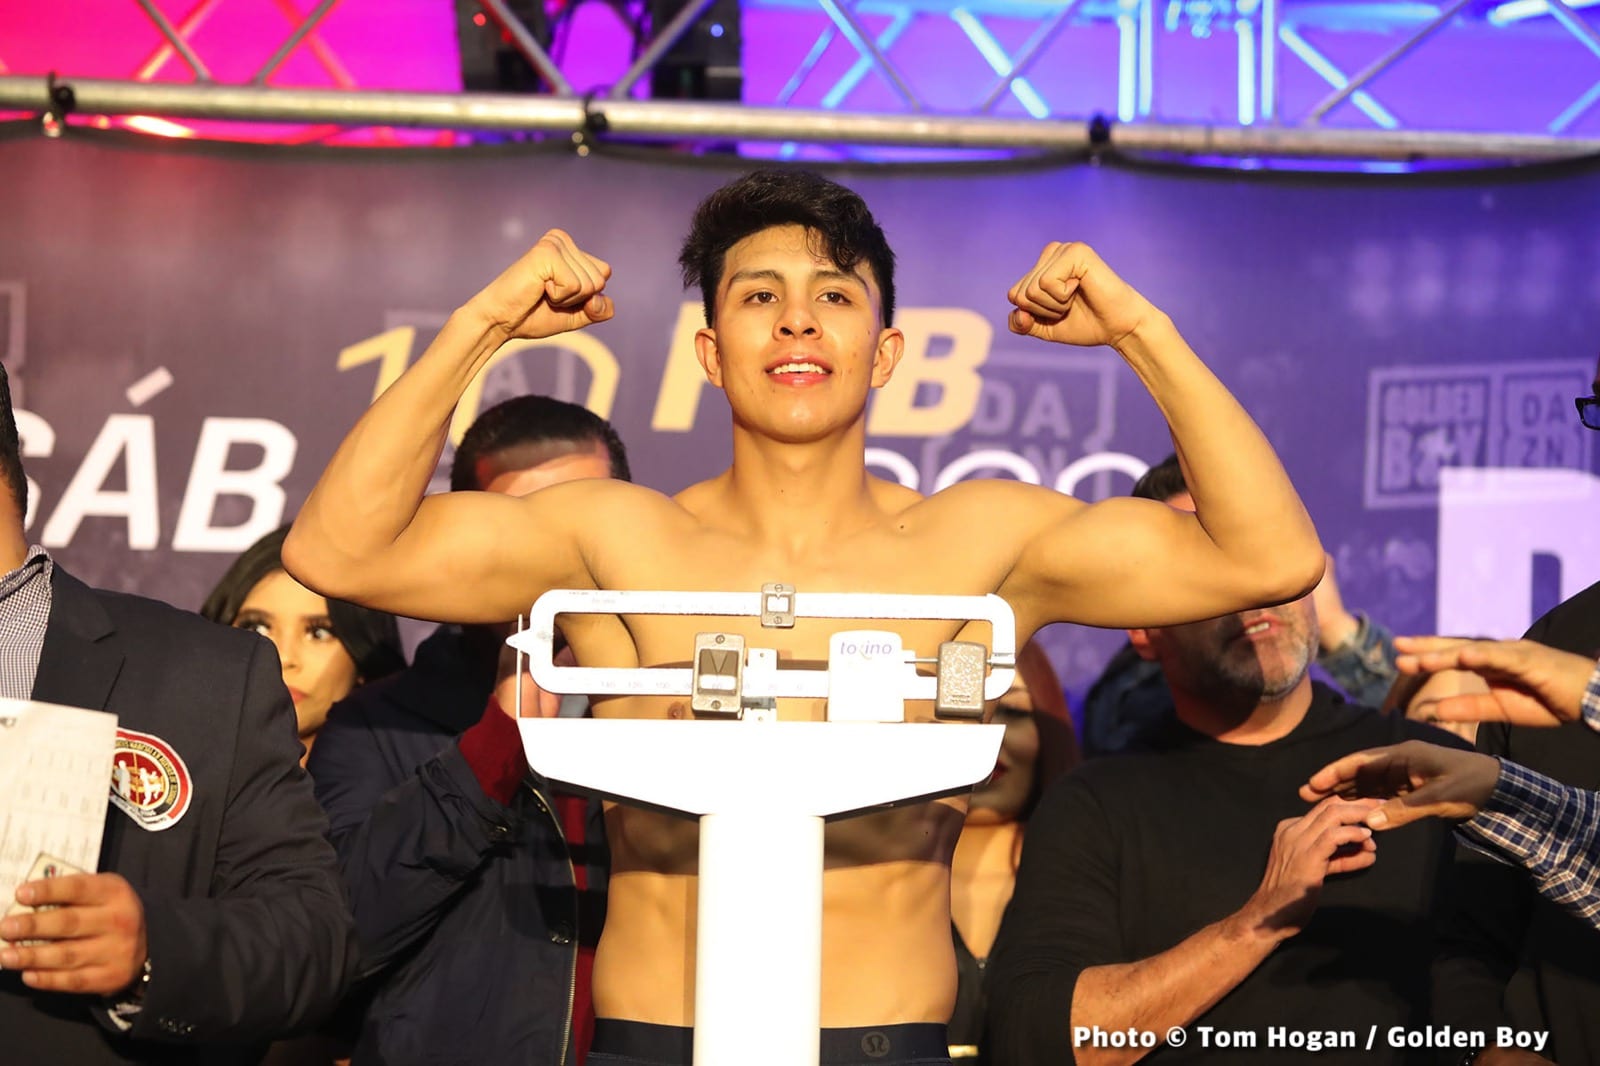 Demetrius Andrade, Jaime Munguia boxing image / photo